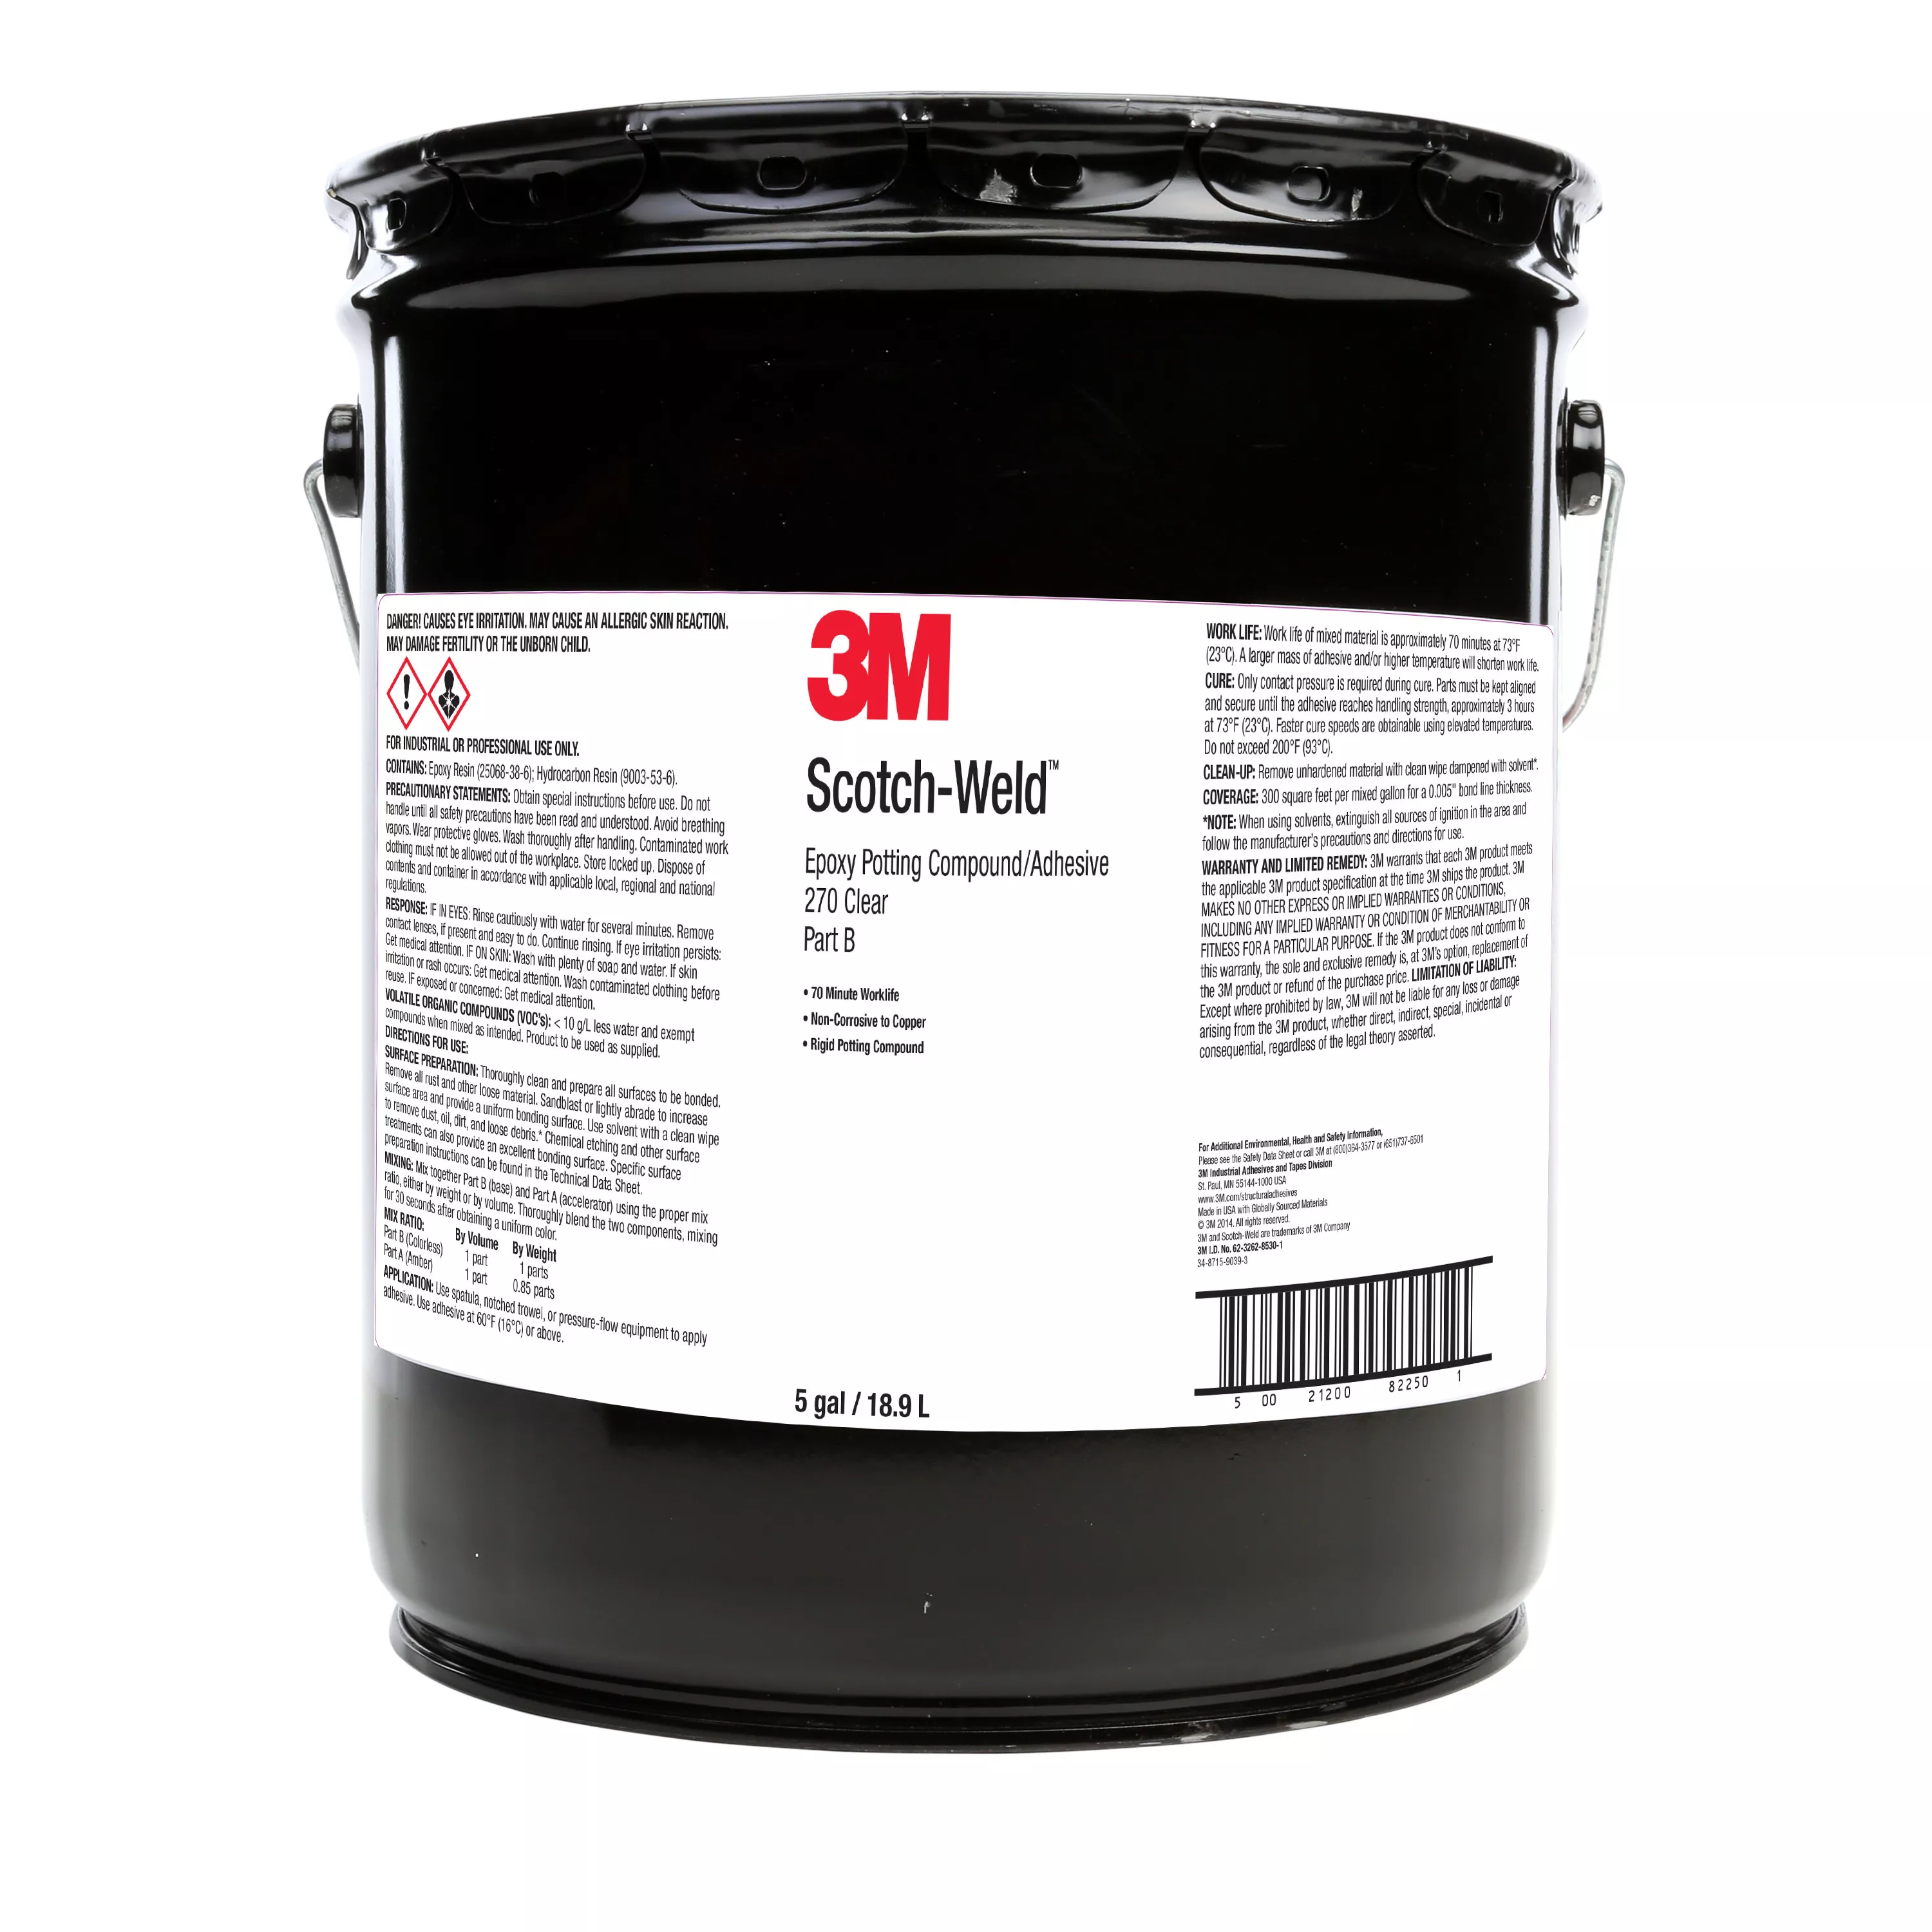 3M™ Scotch-Weld™ Epoxy Potting Compound 270, Clear, Part B, 5 Gallon
(Pail), 1 Can/Drum